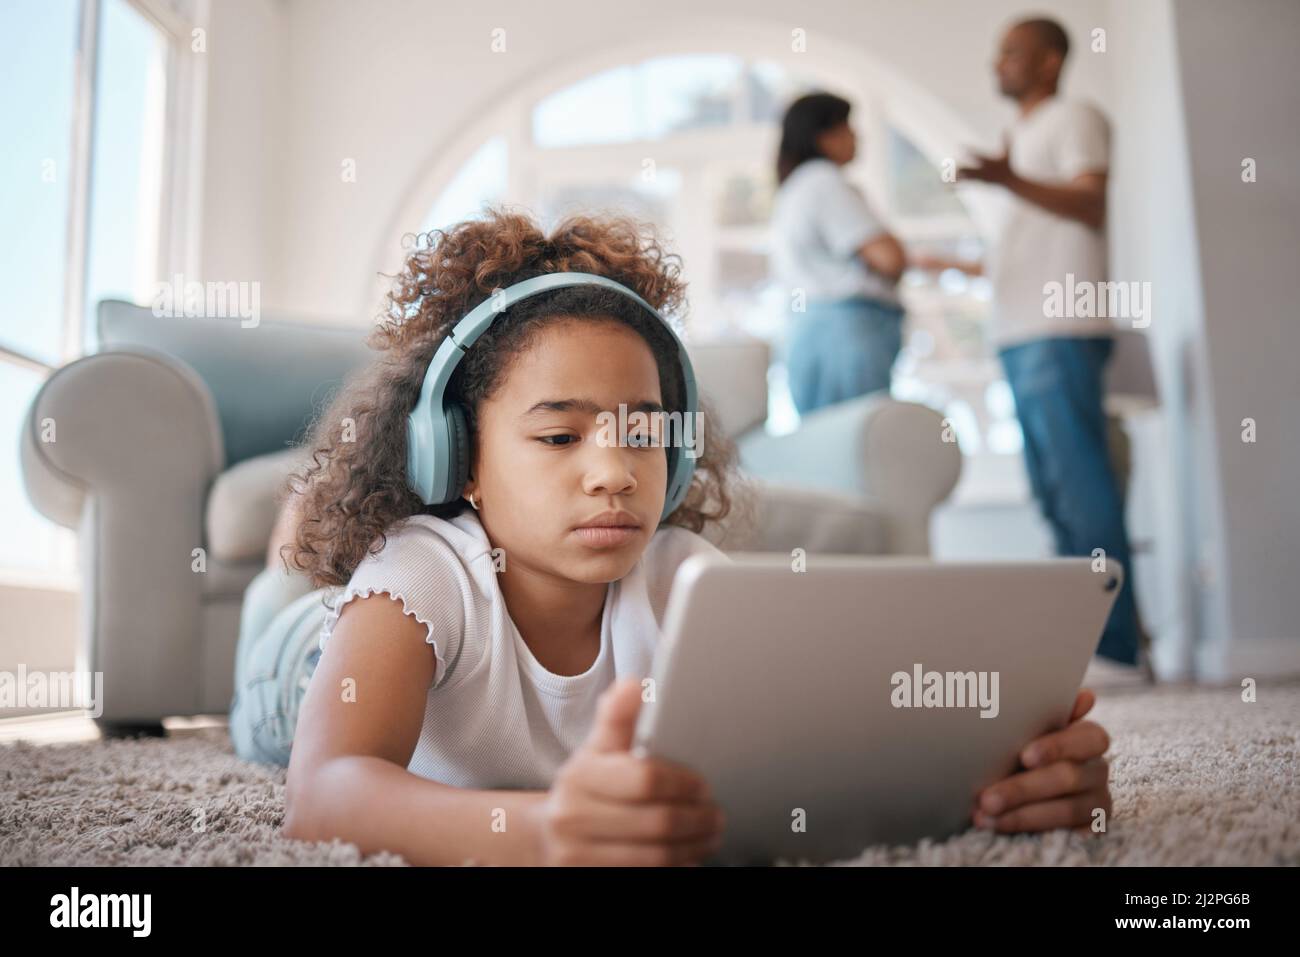 Las cosas se ven rocosas. Foto de una niña usando una tableta digital mientras sus padres argumentan. Foto de stock